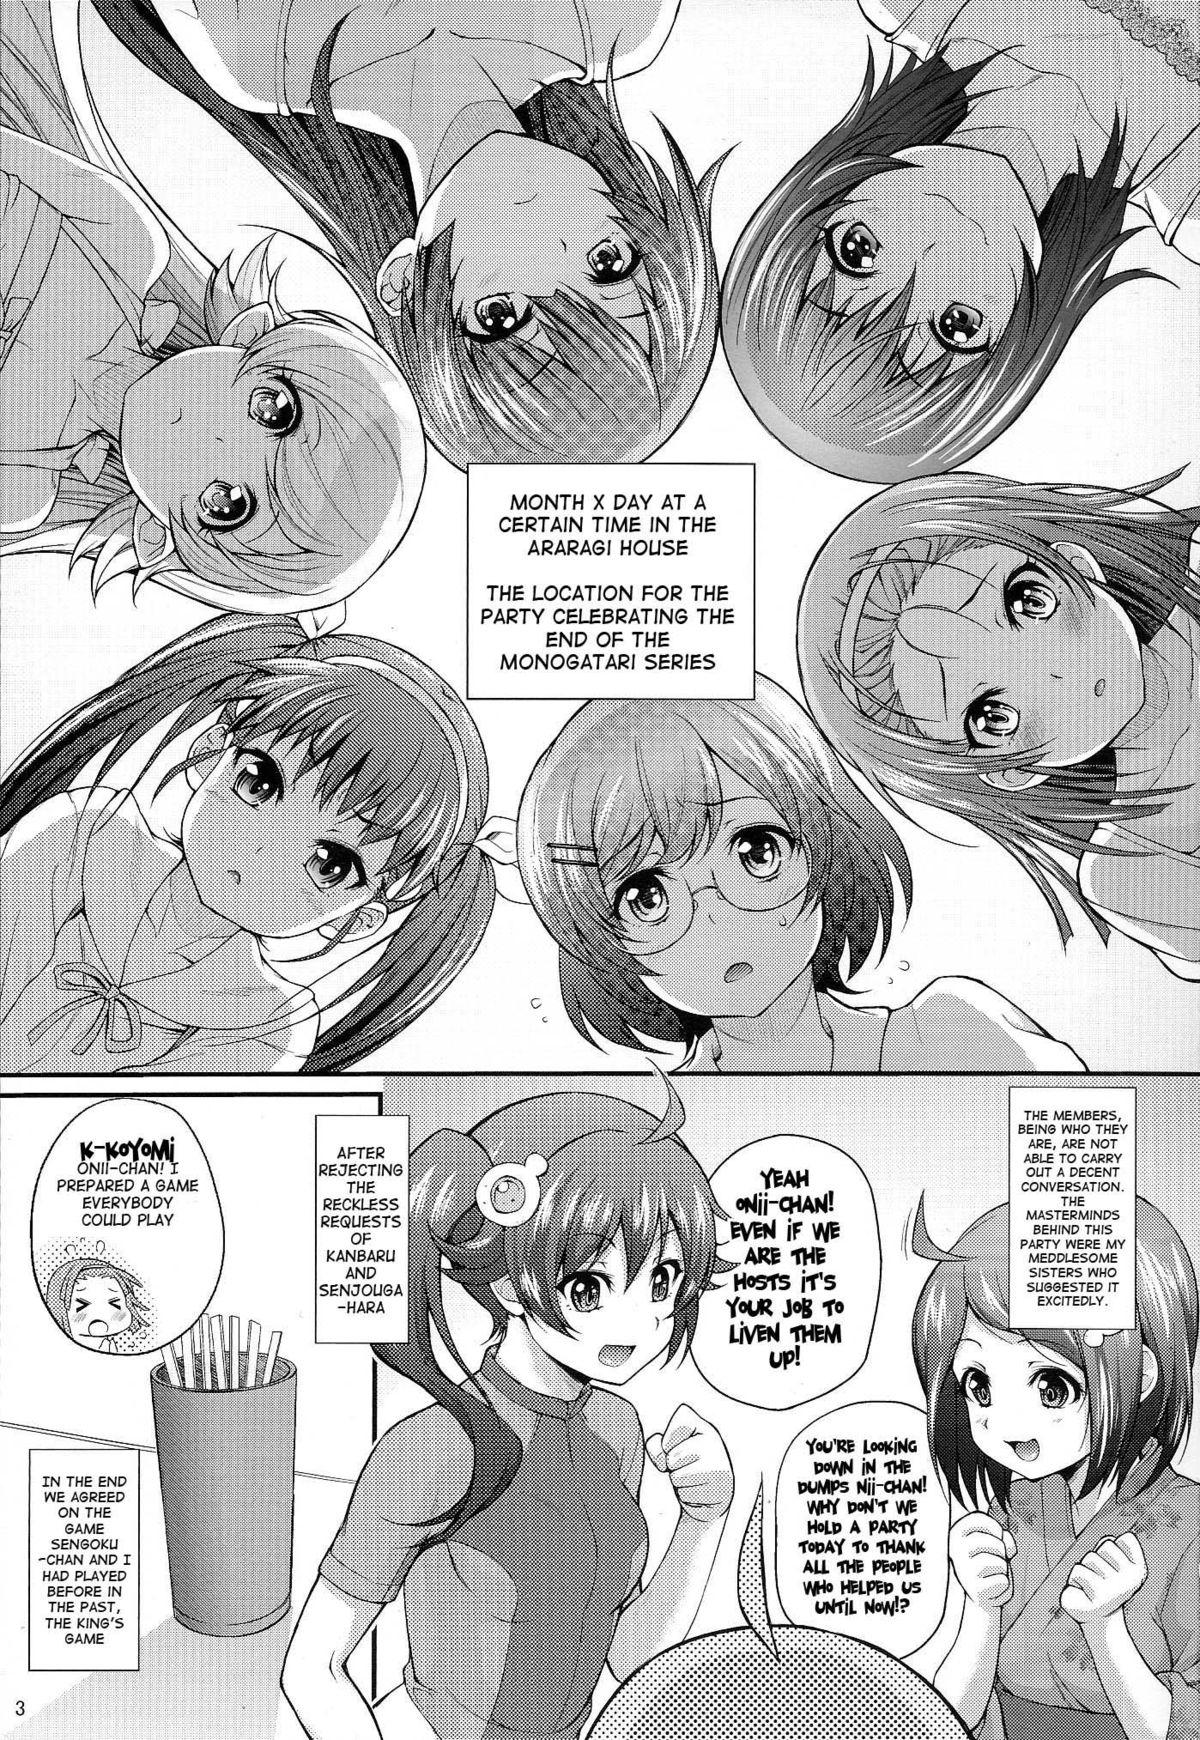 Free 18 Year Old Porn Pachimonogatari Koyomi Party - Bakemonogatari Money Talks - Page 2